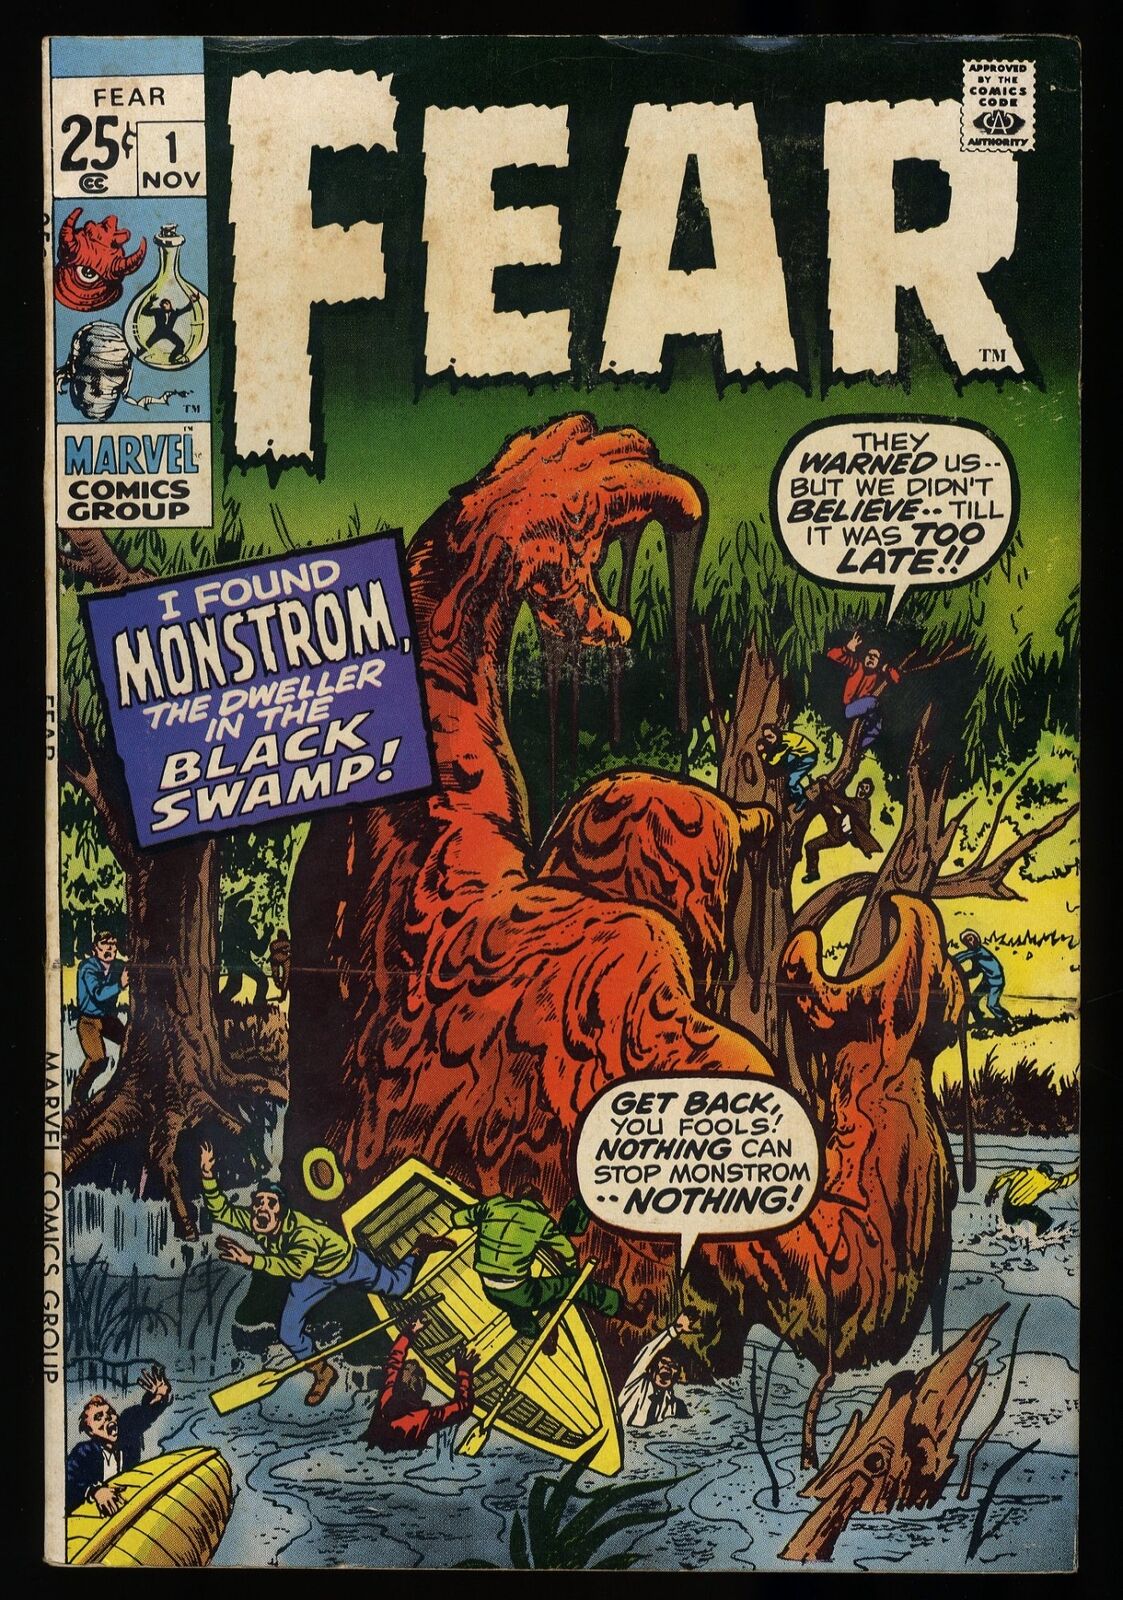 Fear (1970) #1 FN/VF 7.0 Marvel Monster Cover Marvel 1970